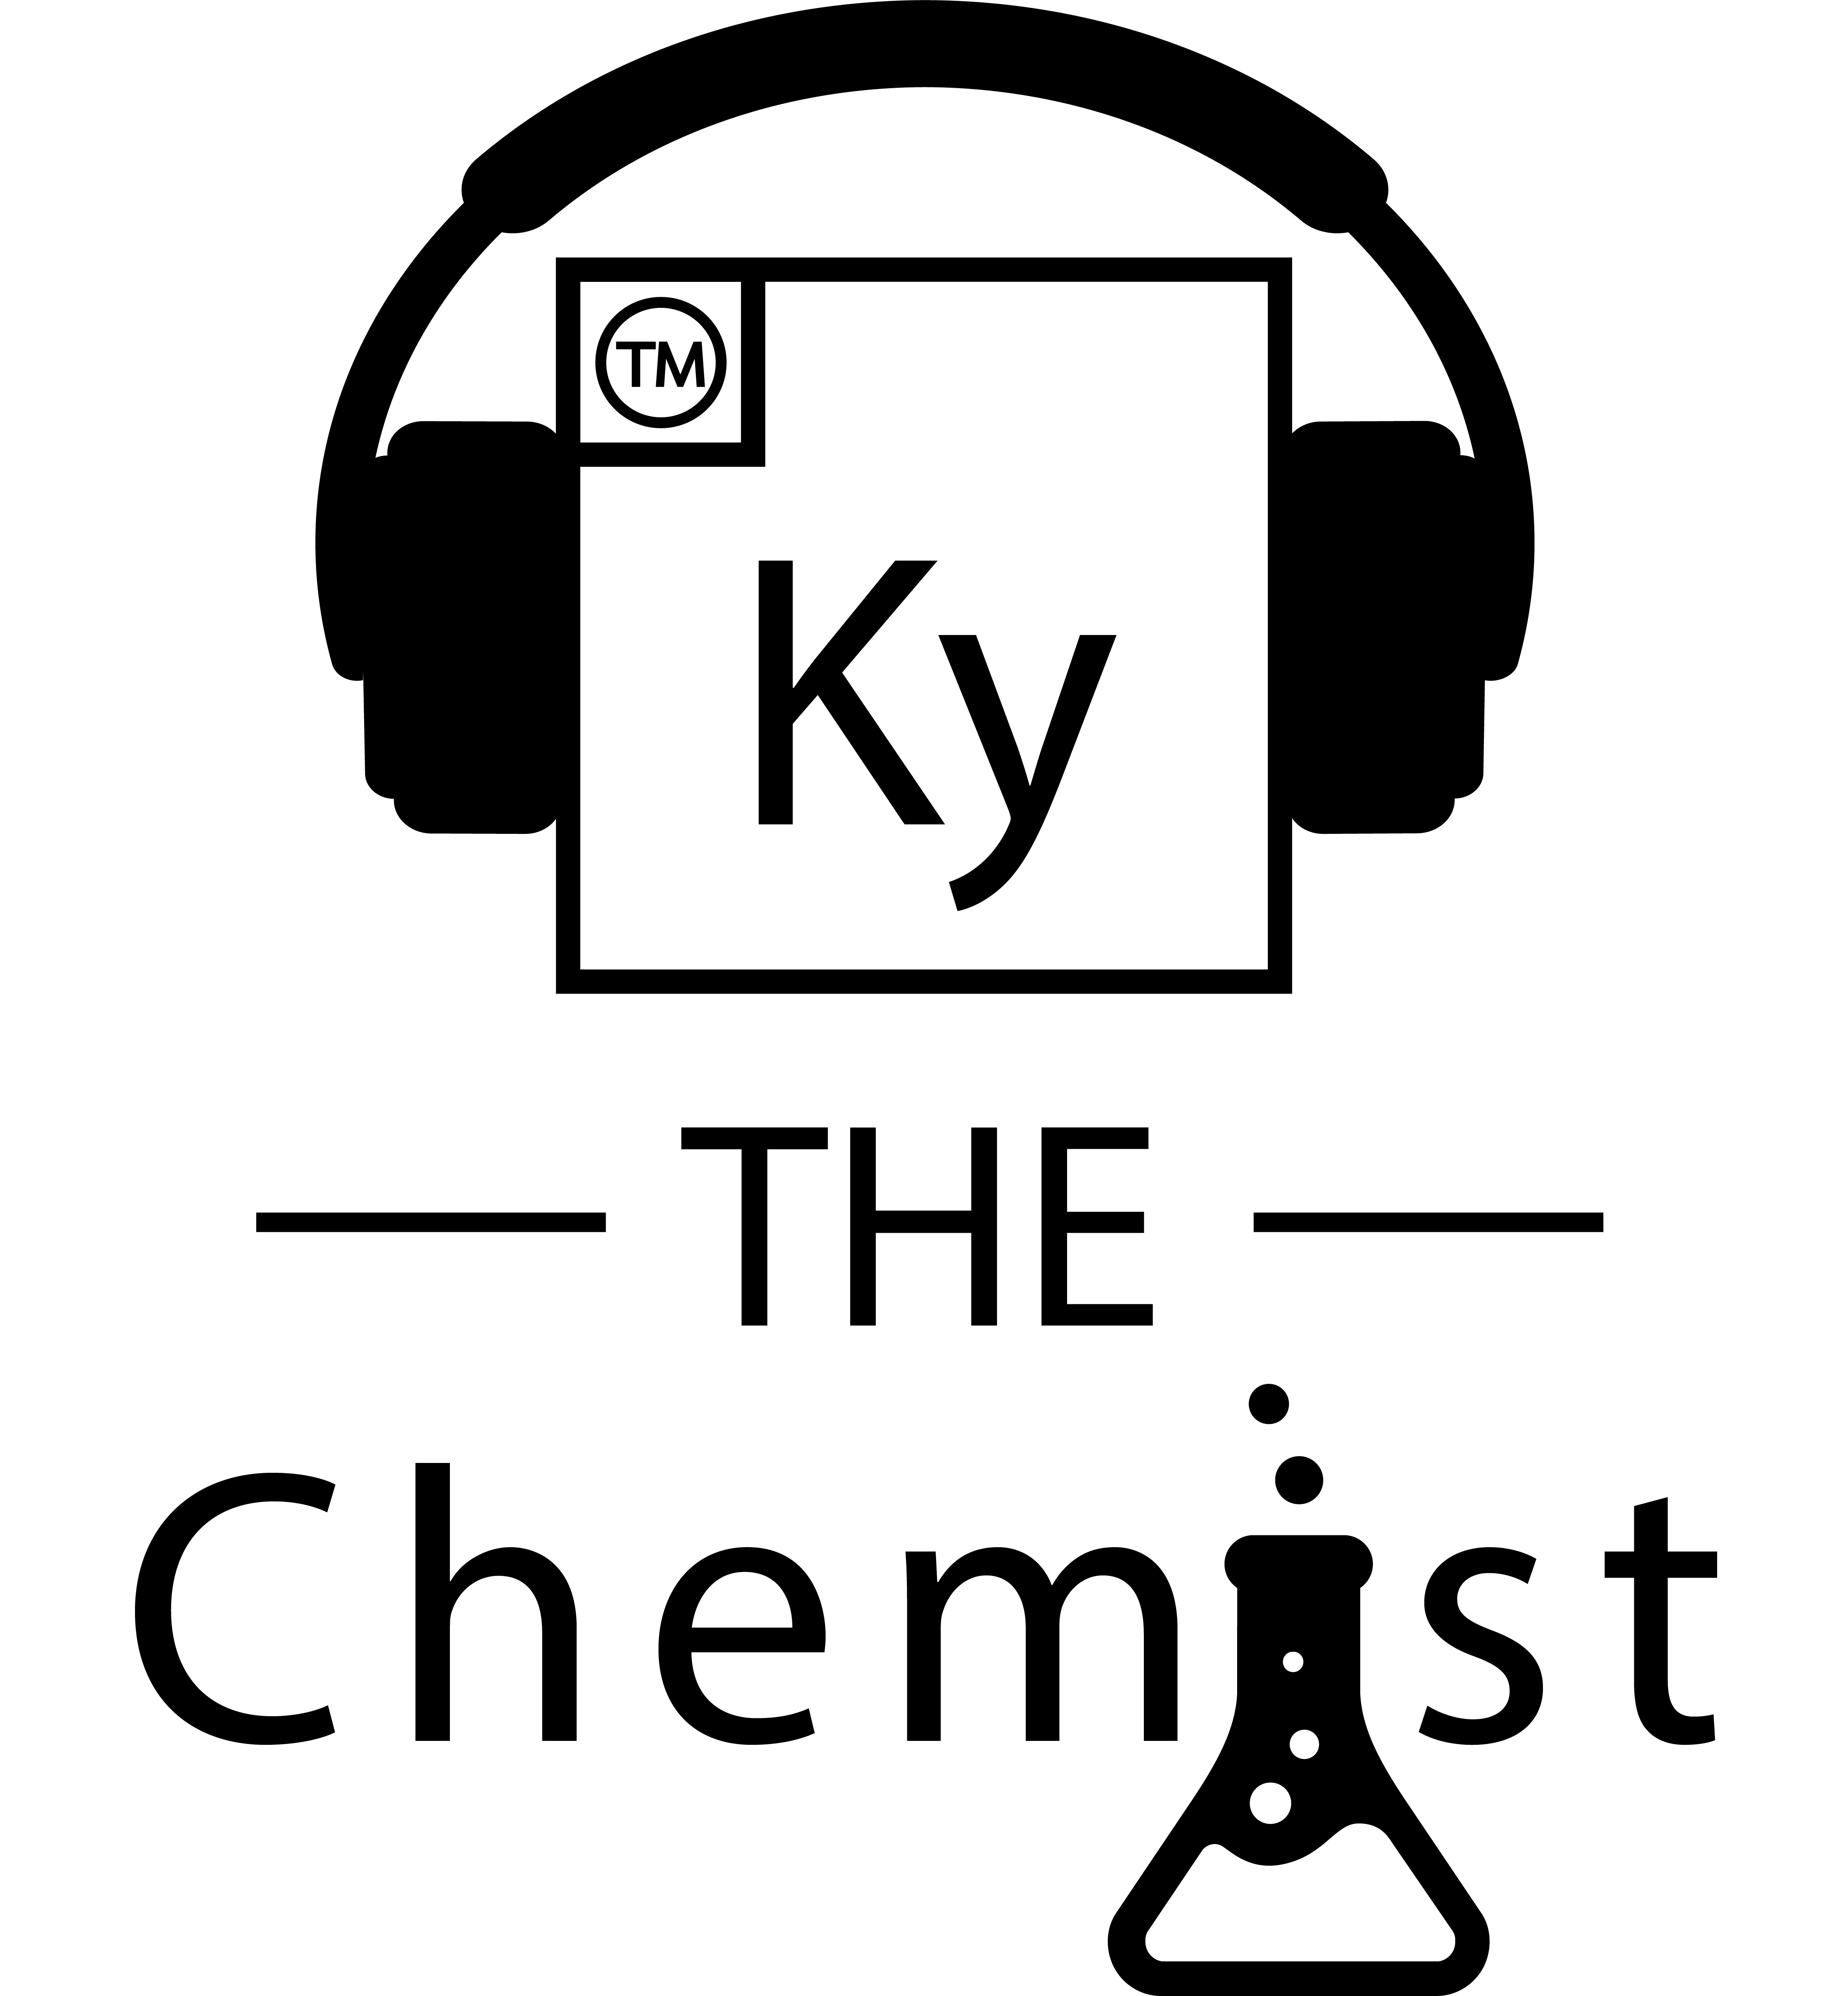 Speaker: Ky the Chemist